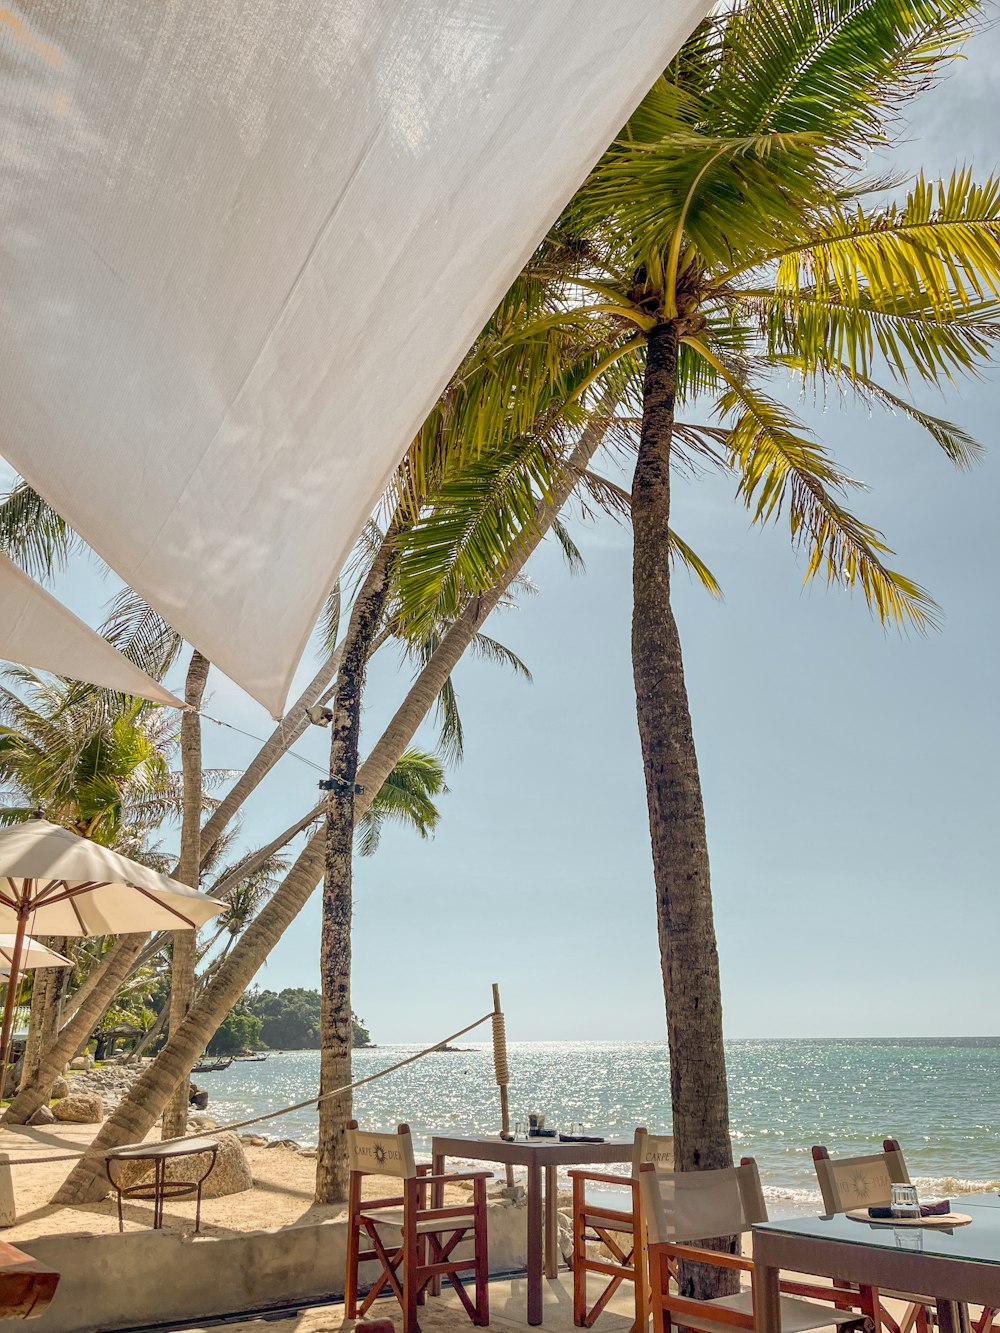 Una vista de una playa con una hamaca y palmeras